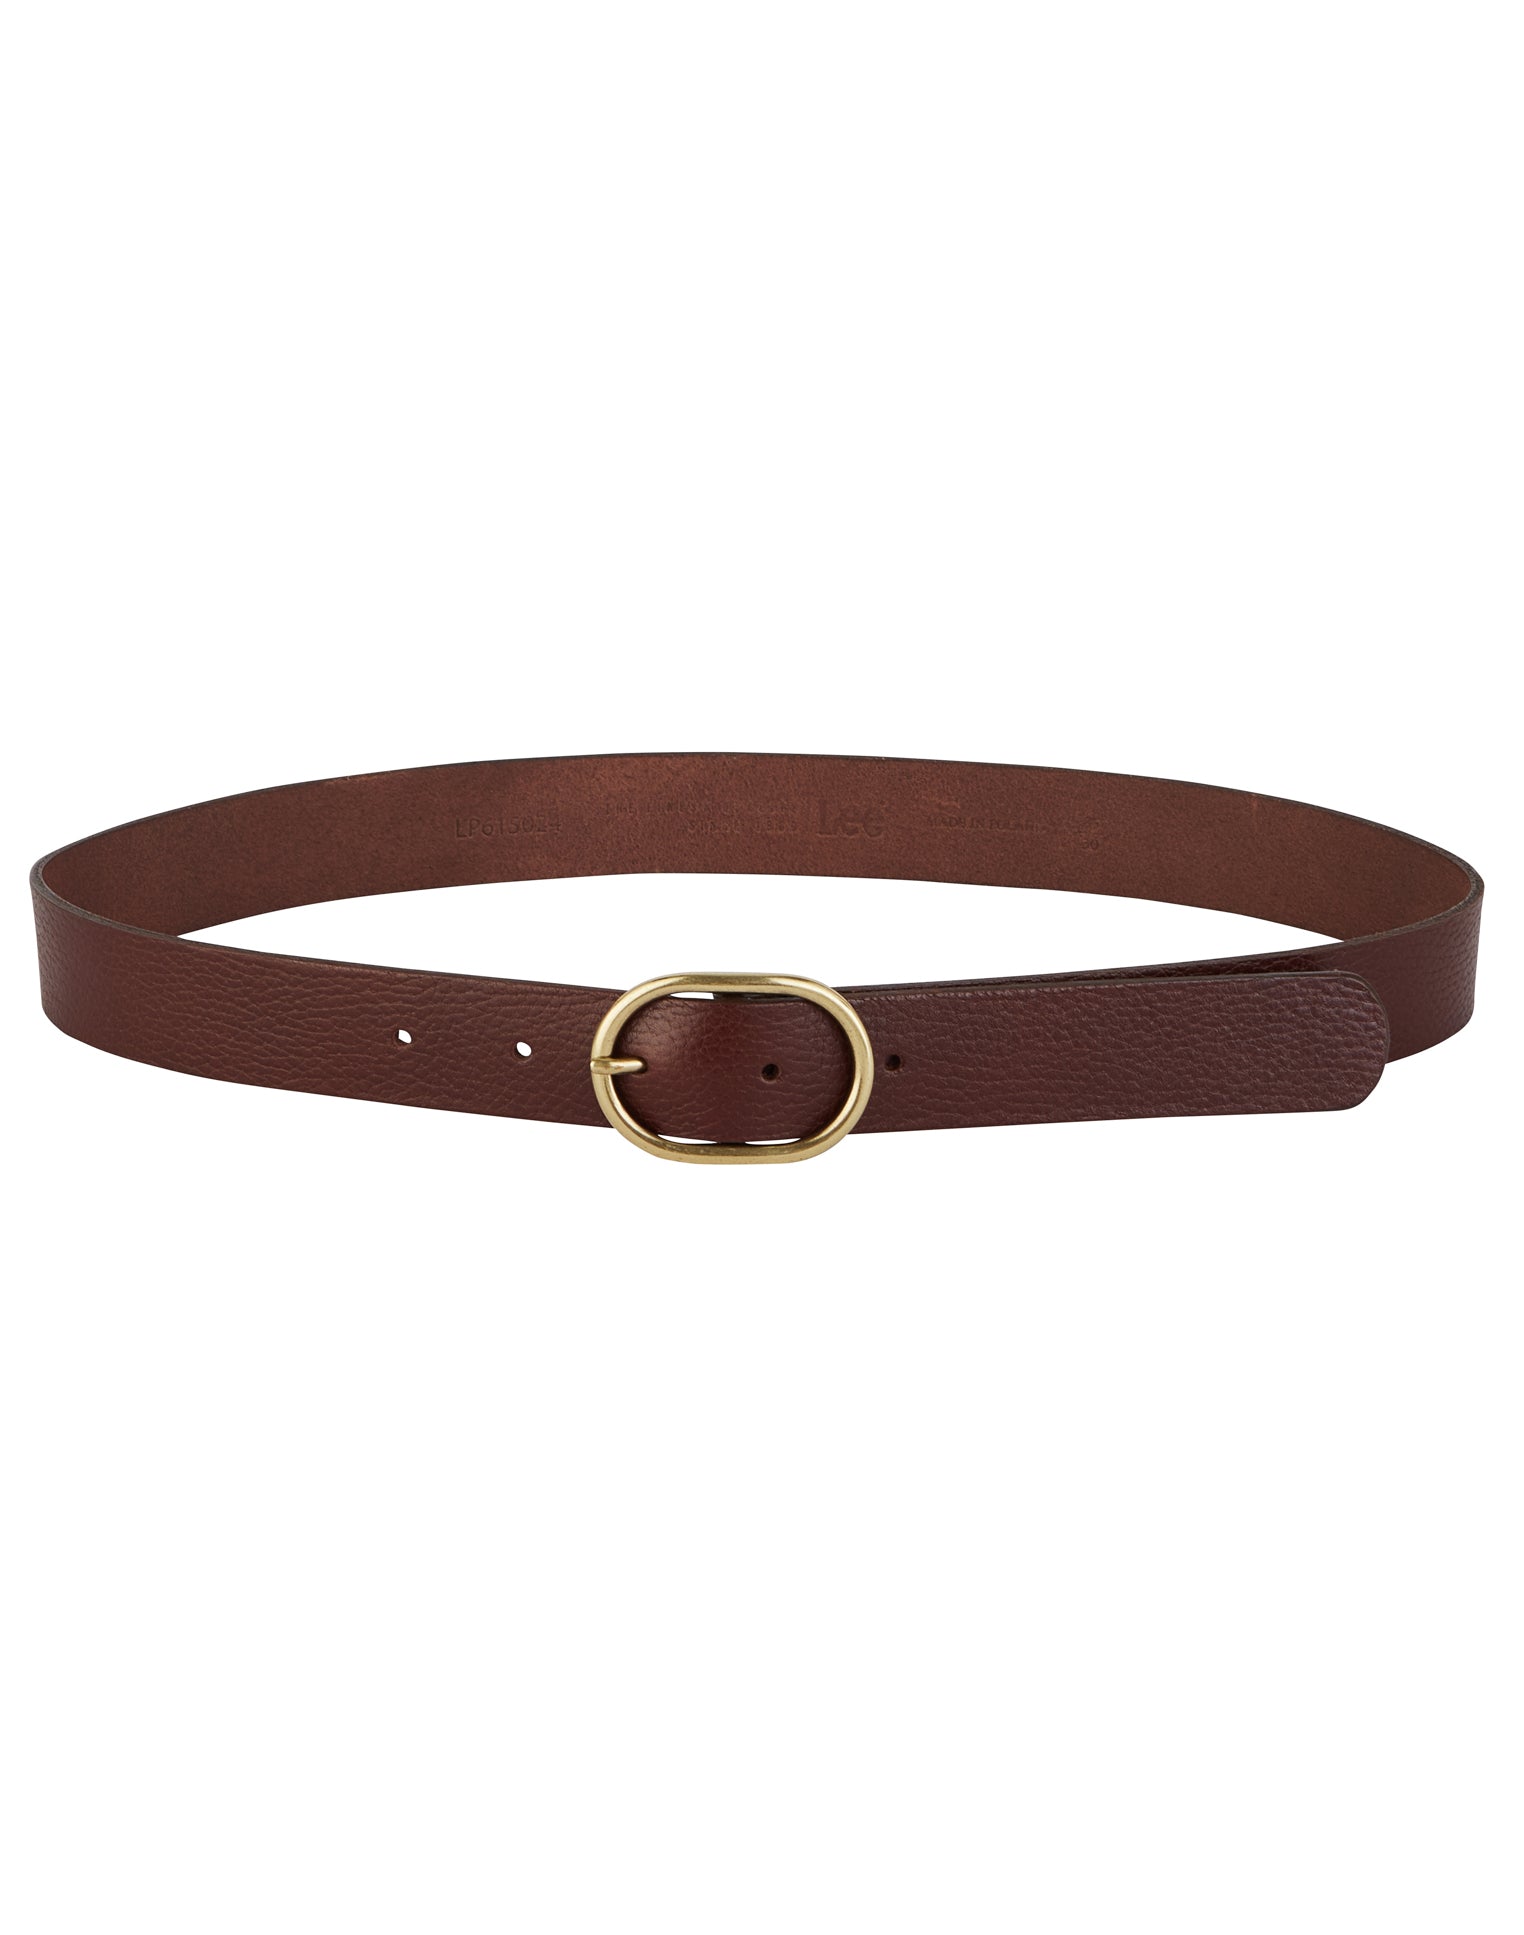 Wide Leather Belt in Dark Brown